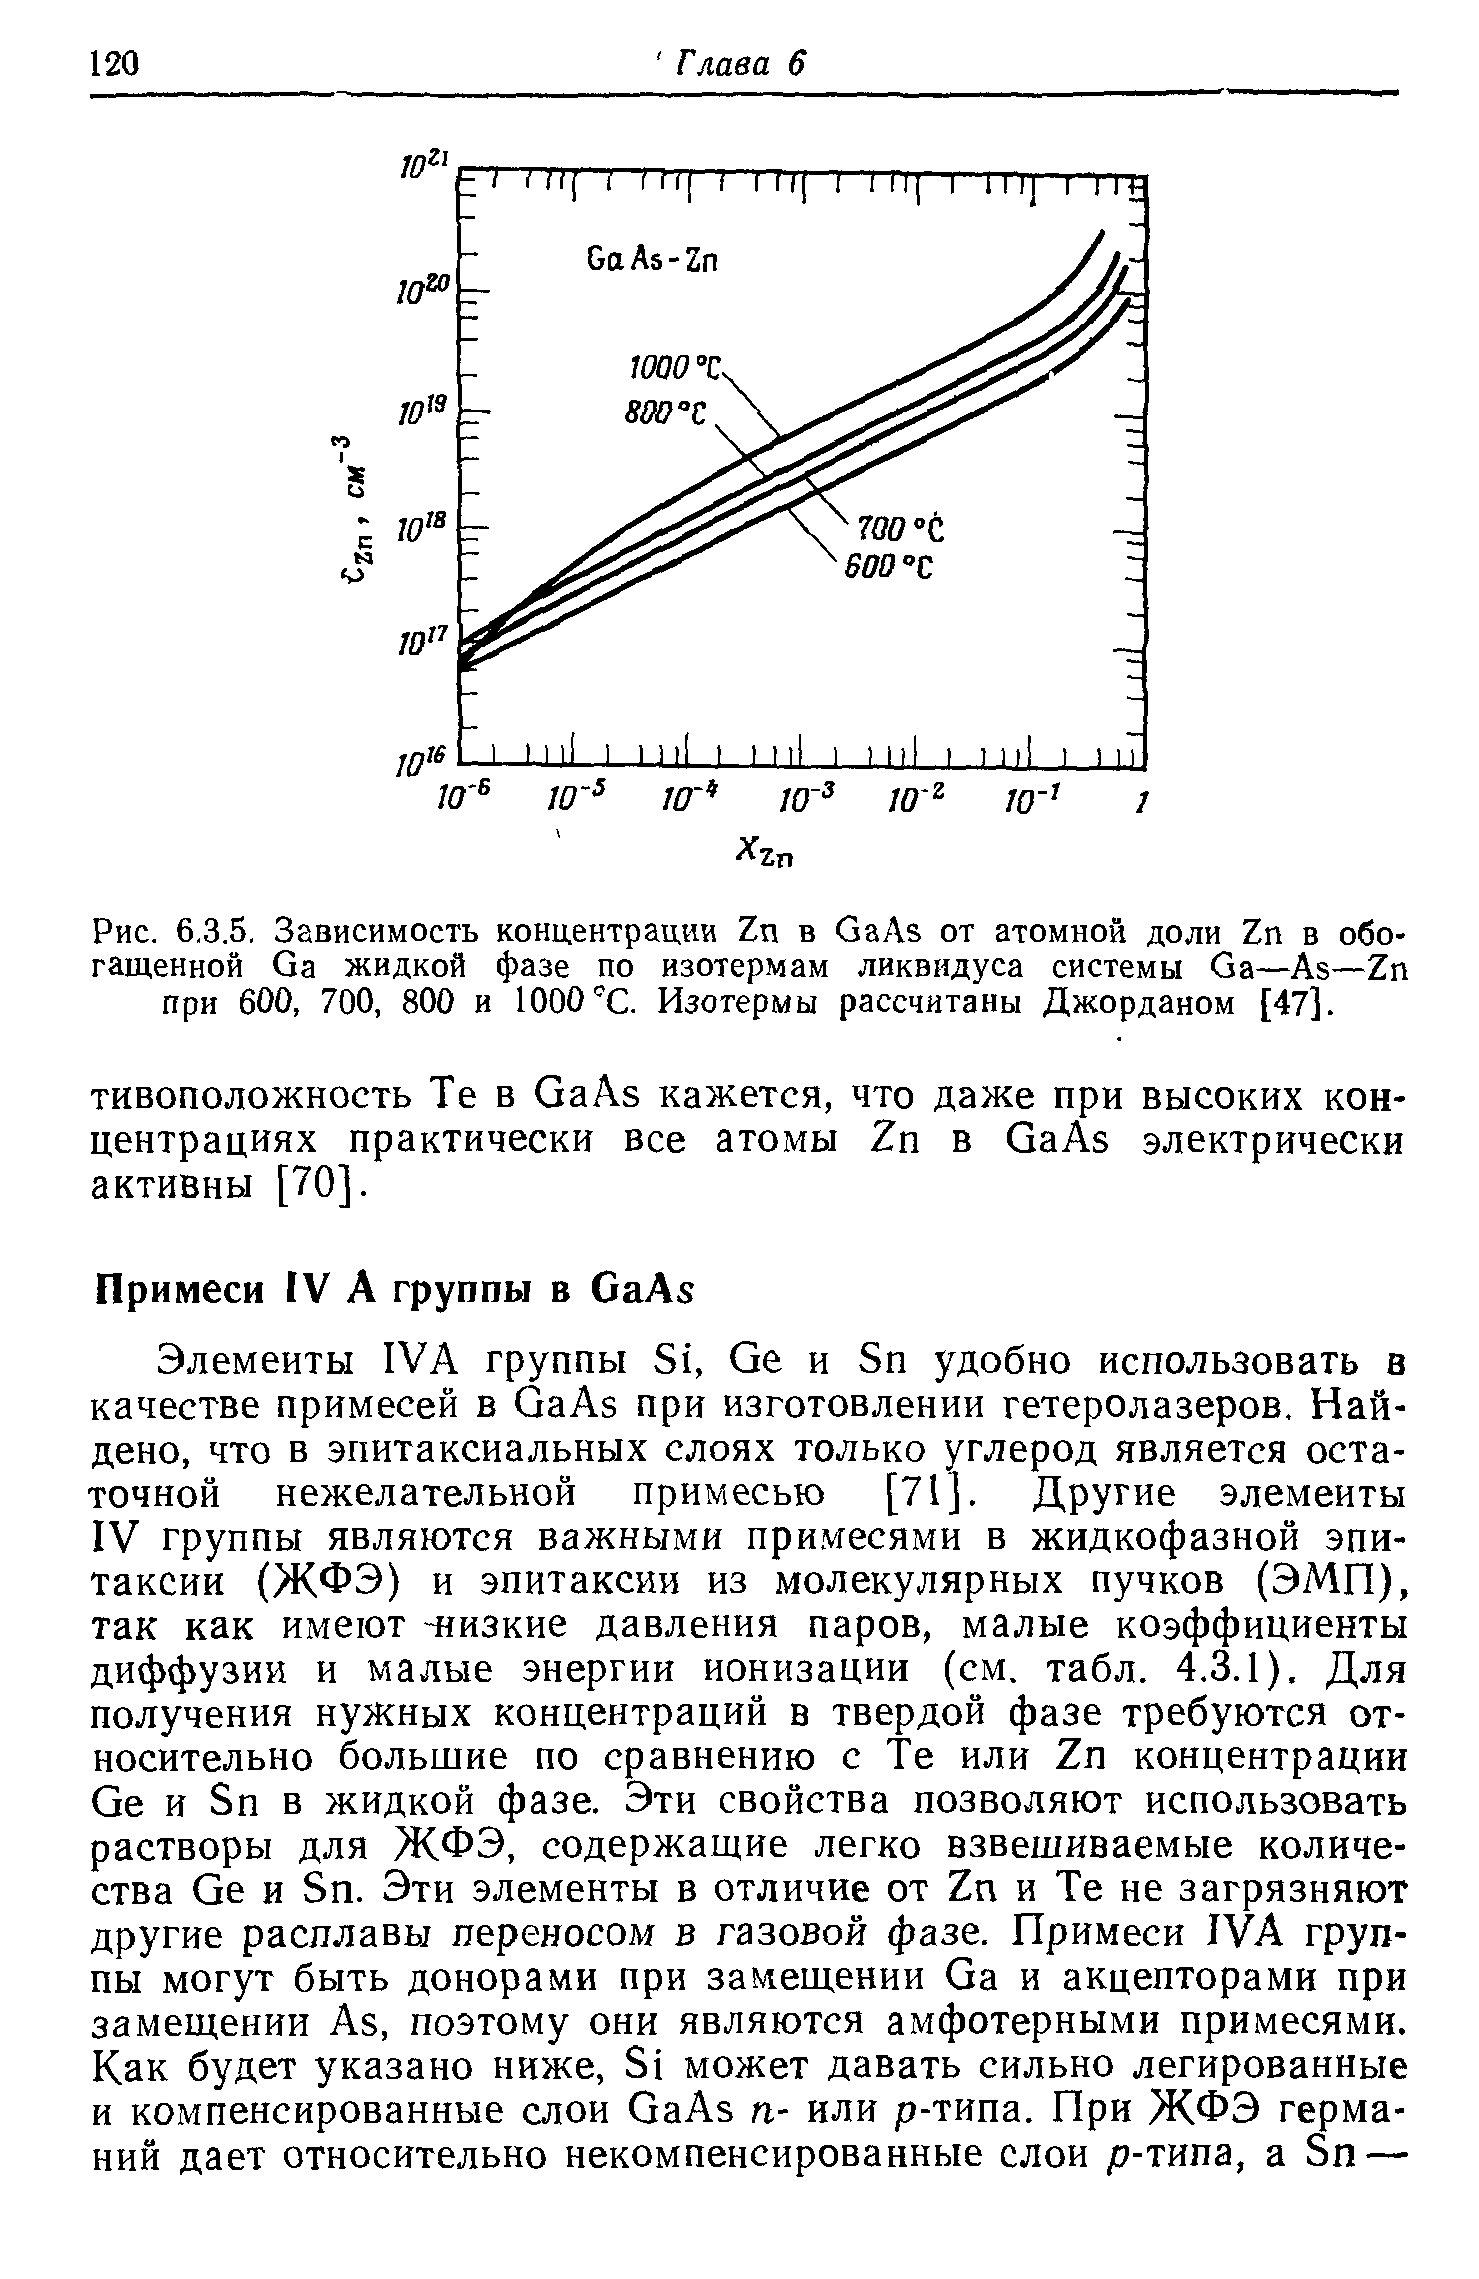 Рис. 6.3.5, Зависимость концентрации Zn в GaAs от атомной доли Zn в обогащенной Ga <a href="/info/236464">жидкой фазе</a> по изотермам ликвидуса системы Ga—Аз—Zn при 600, 700, 800 и 1000 С. Изотермы рассчитаны Джорданом [47].
